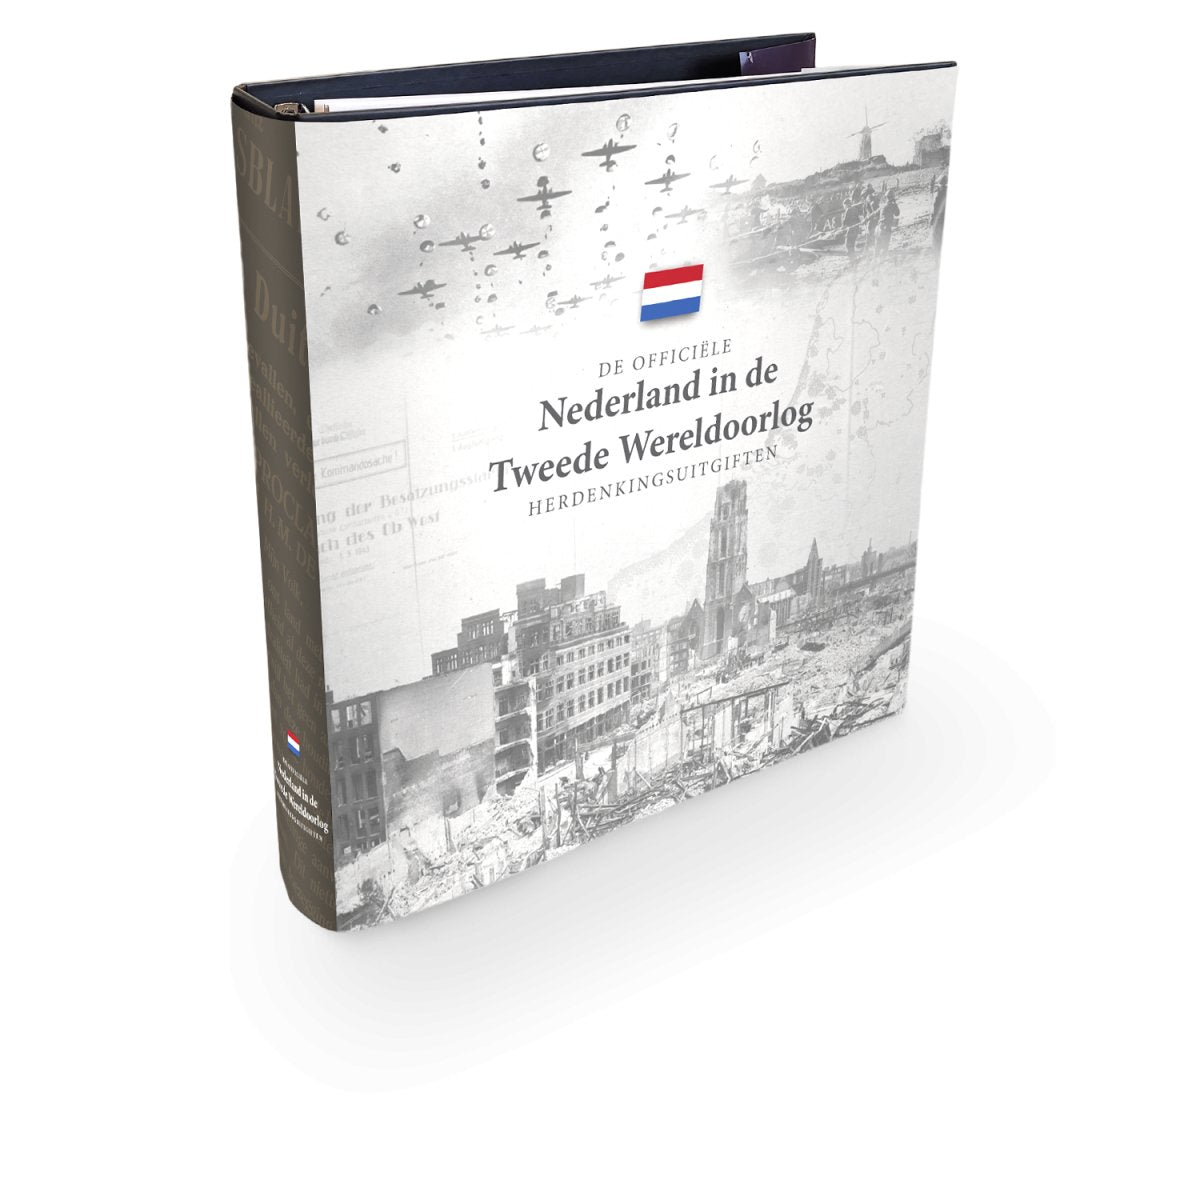 Verzamelalbum “De Nederland in Oorlog Herdenkingsuitgiften - Edel Collecties